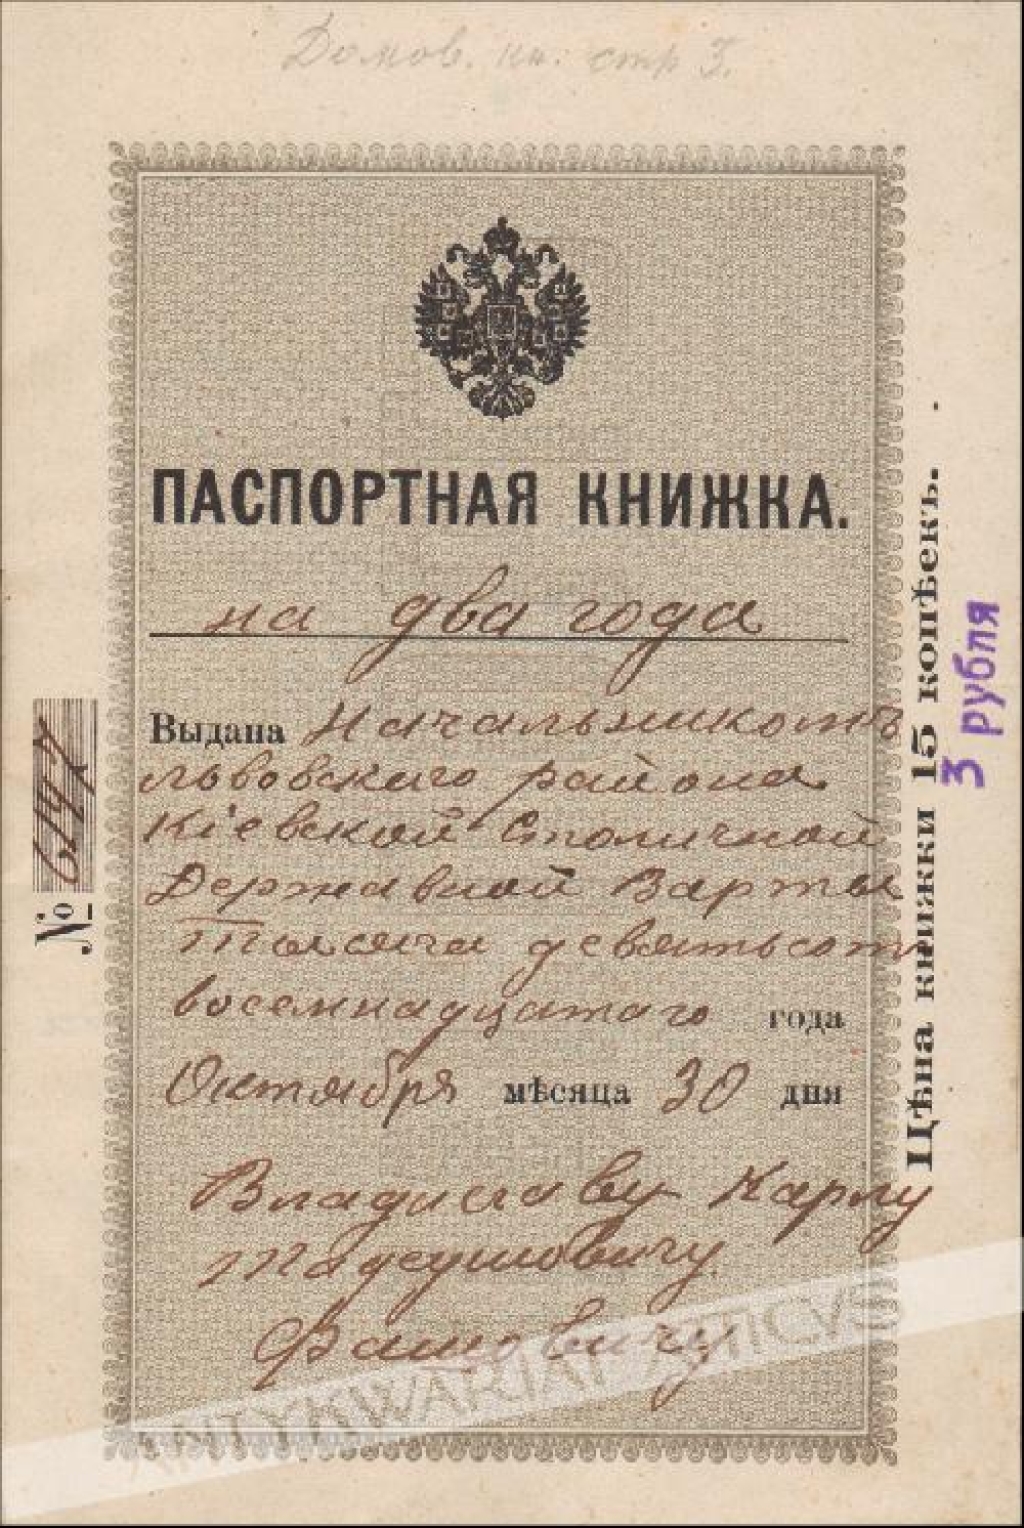 [dokument, 1918] Паспортная книжка [dowód osobisty]